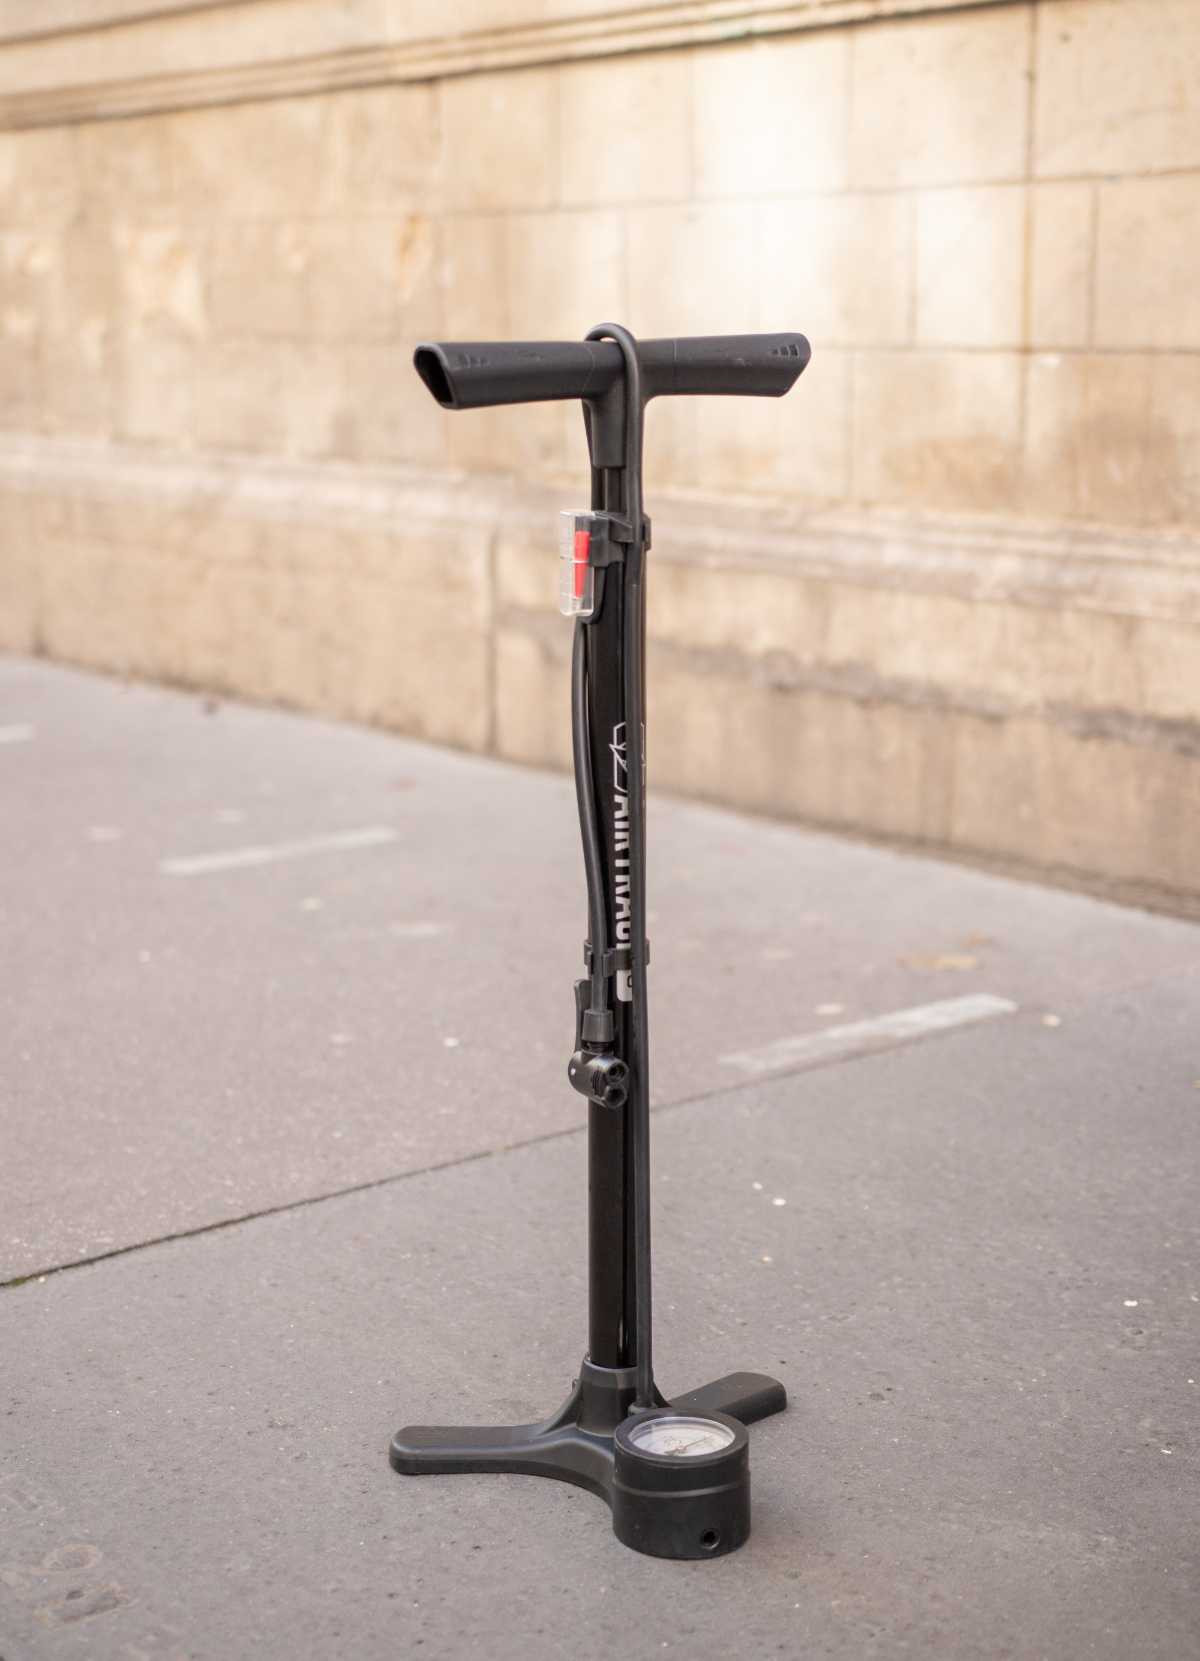 Pompe à vélo à Pied comprend des adaptateurs – MSKA Solutions Ltd